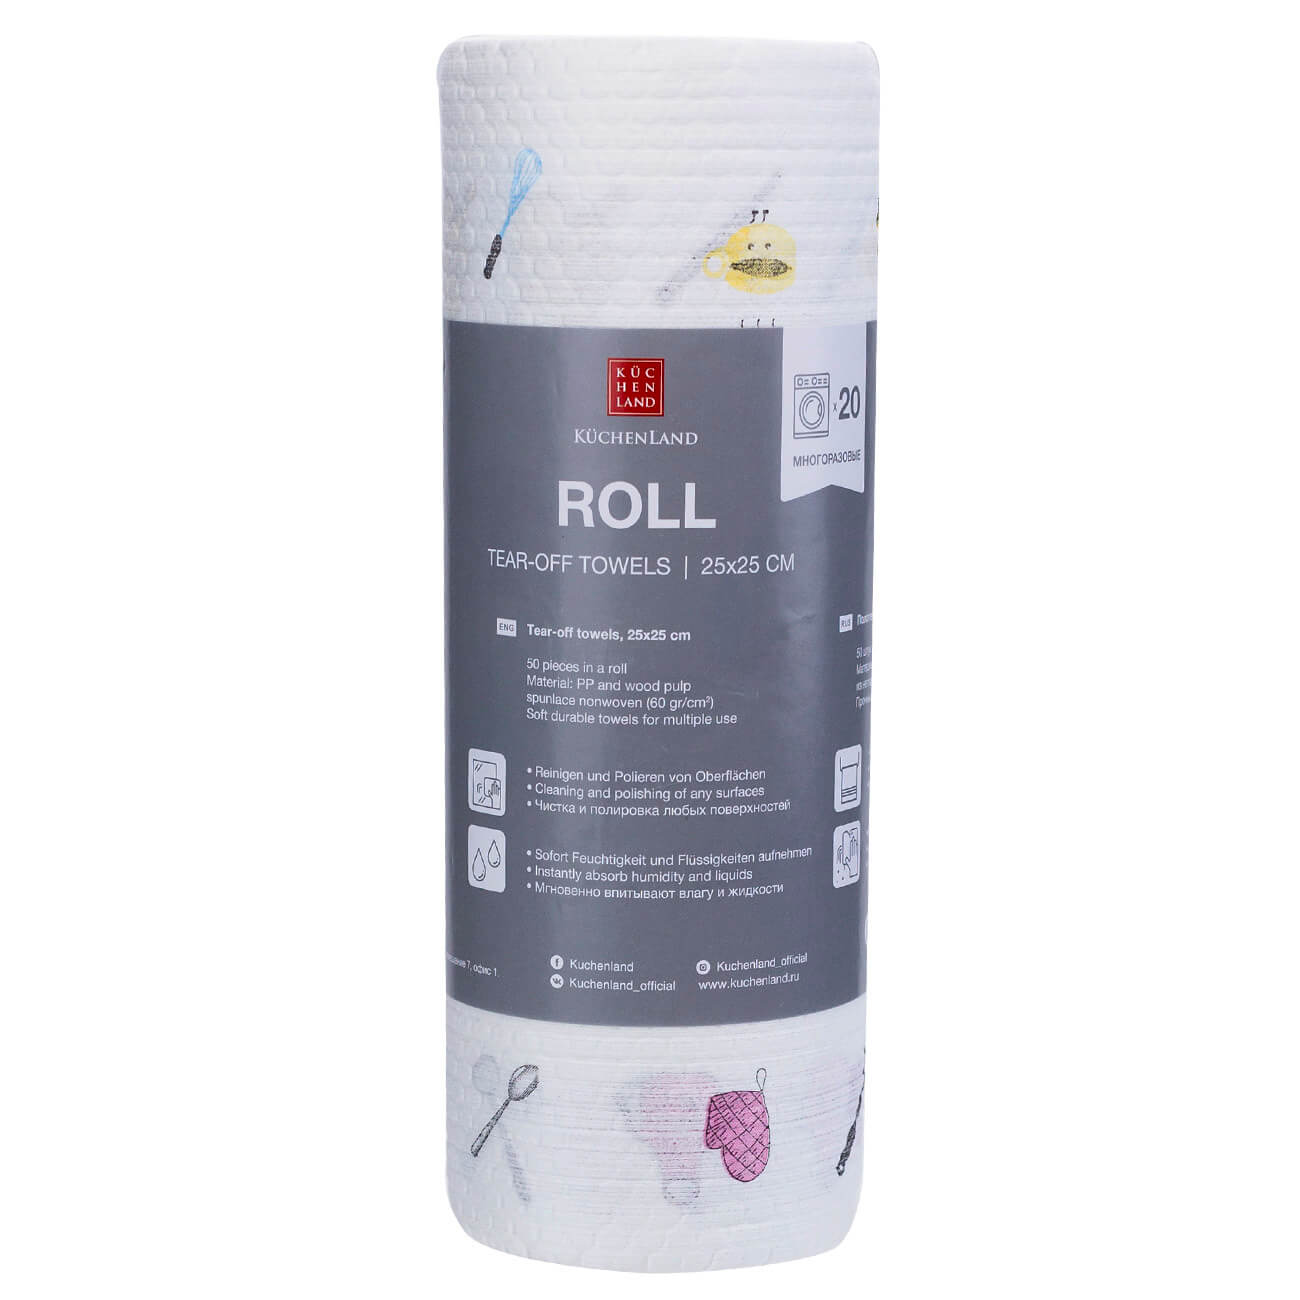 Roll towels, 25x25 cm, 50 pcs, white printed, Roll изображение № 1